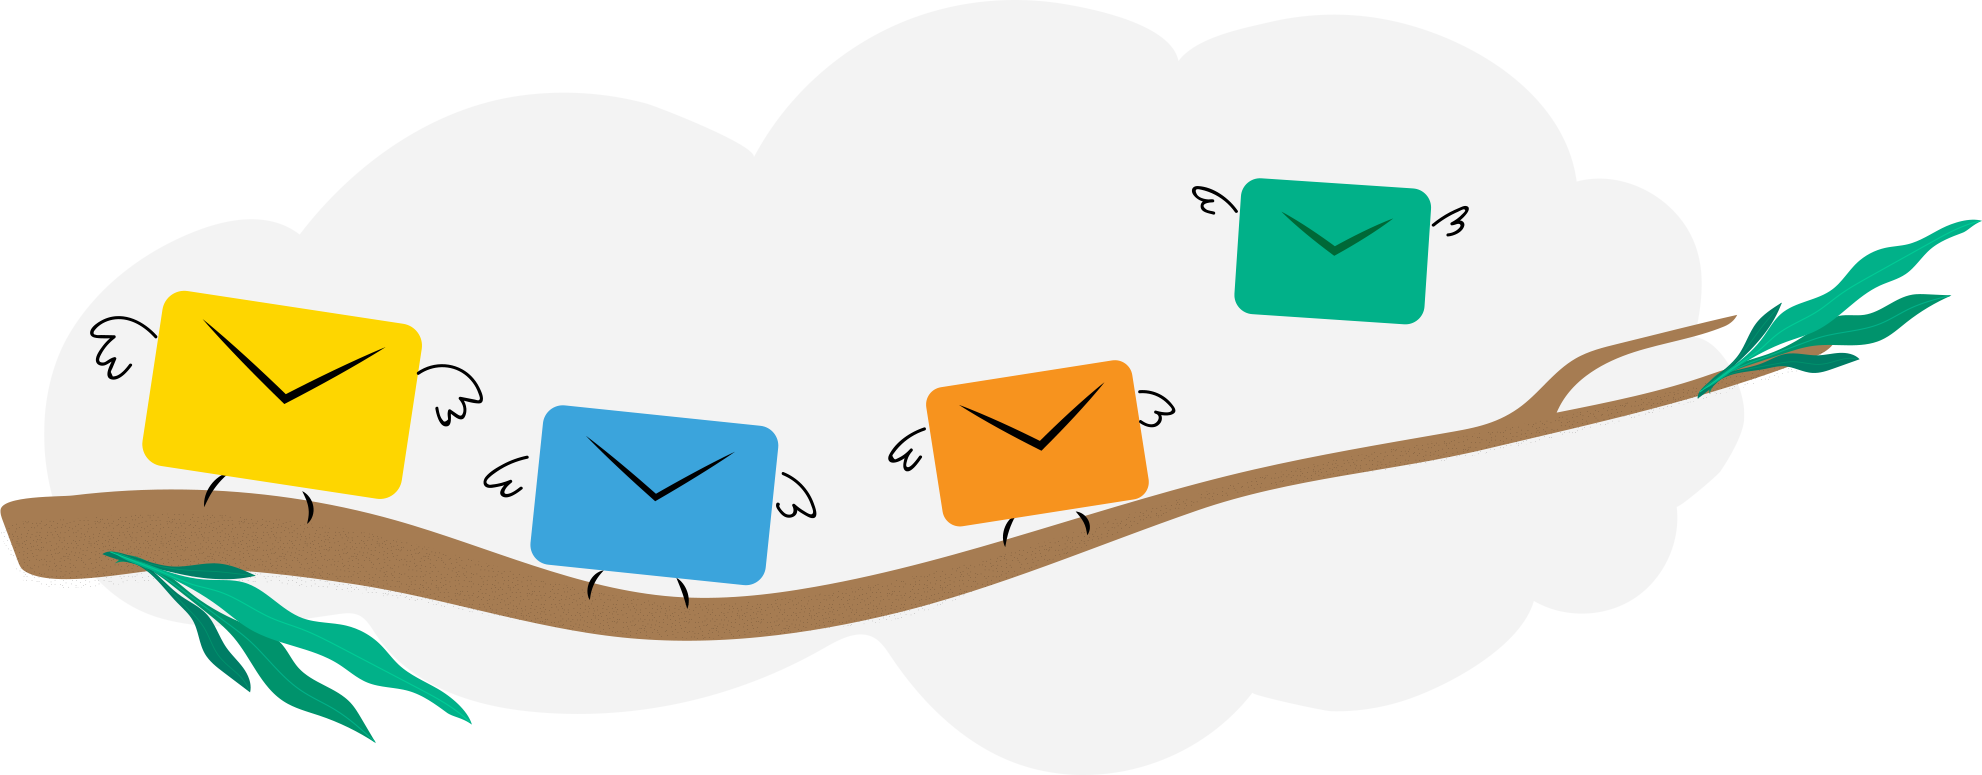 Administre múltiples alias y direcciones de correo electrónico desde un solo buzón de correo